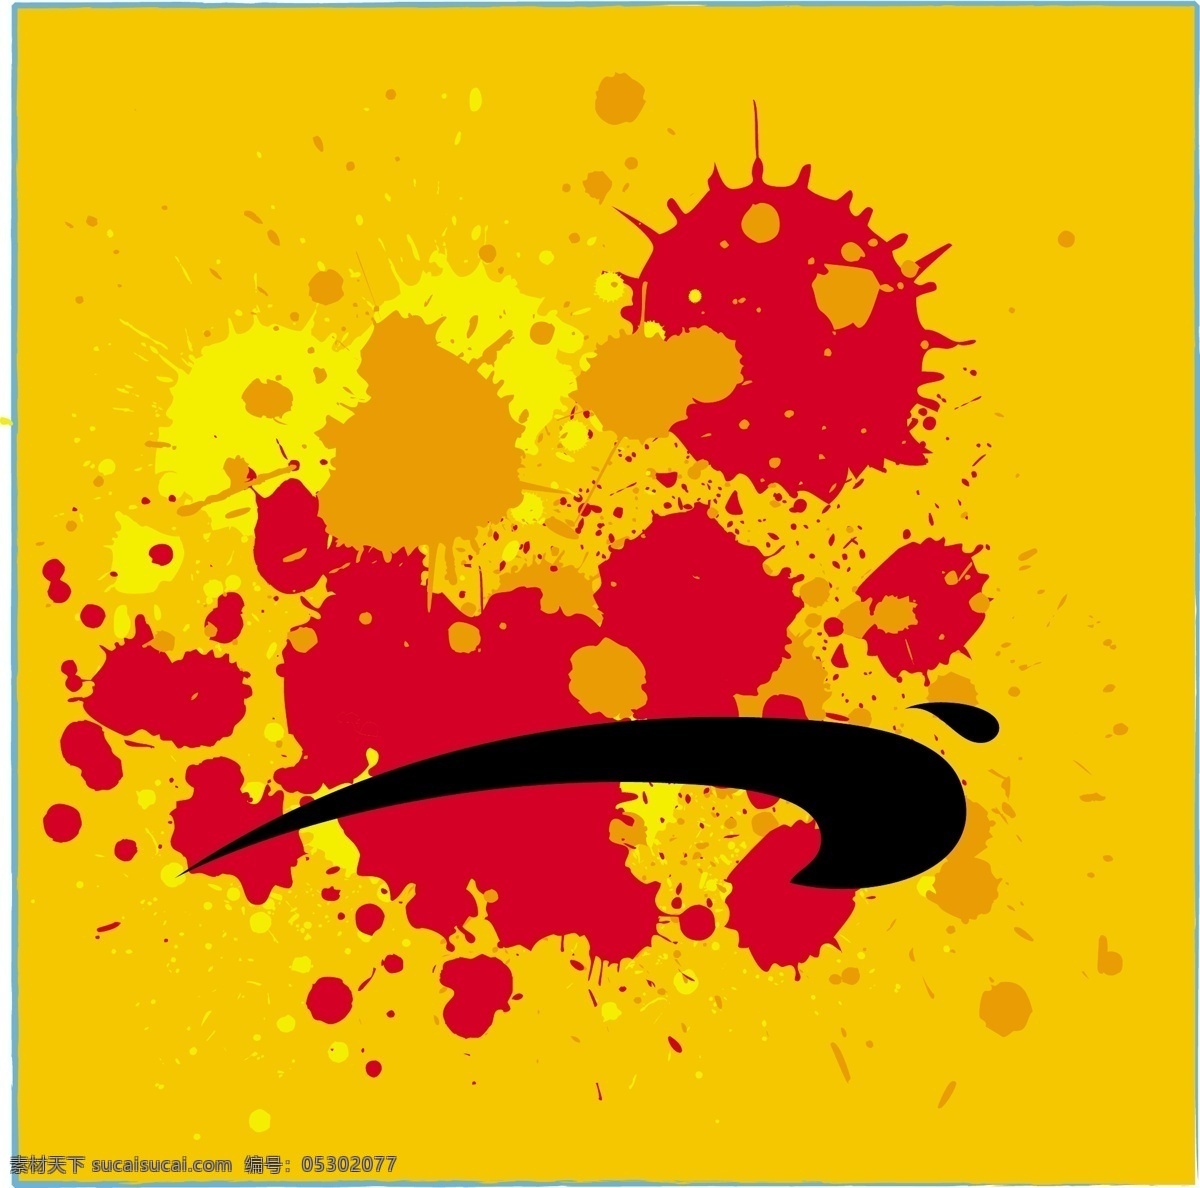 垃圾 油漆 飞溅 喷雾 形状 图示的 染色 垃圾油漆飞溅 矢量图 其他矢量图